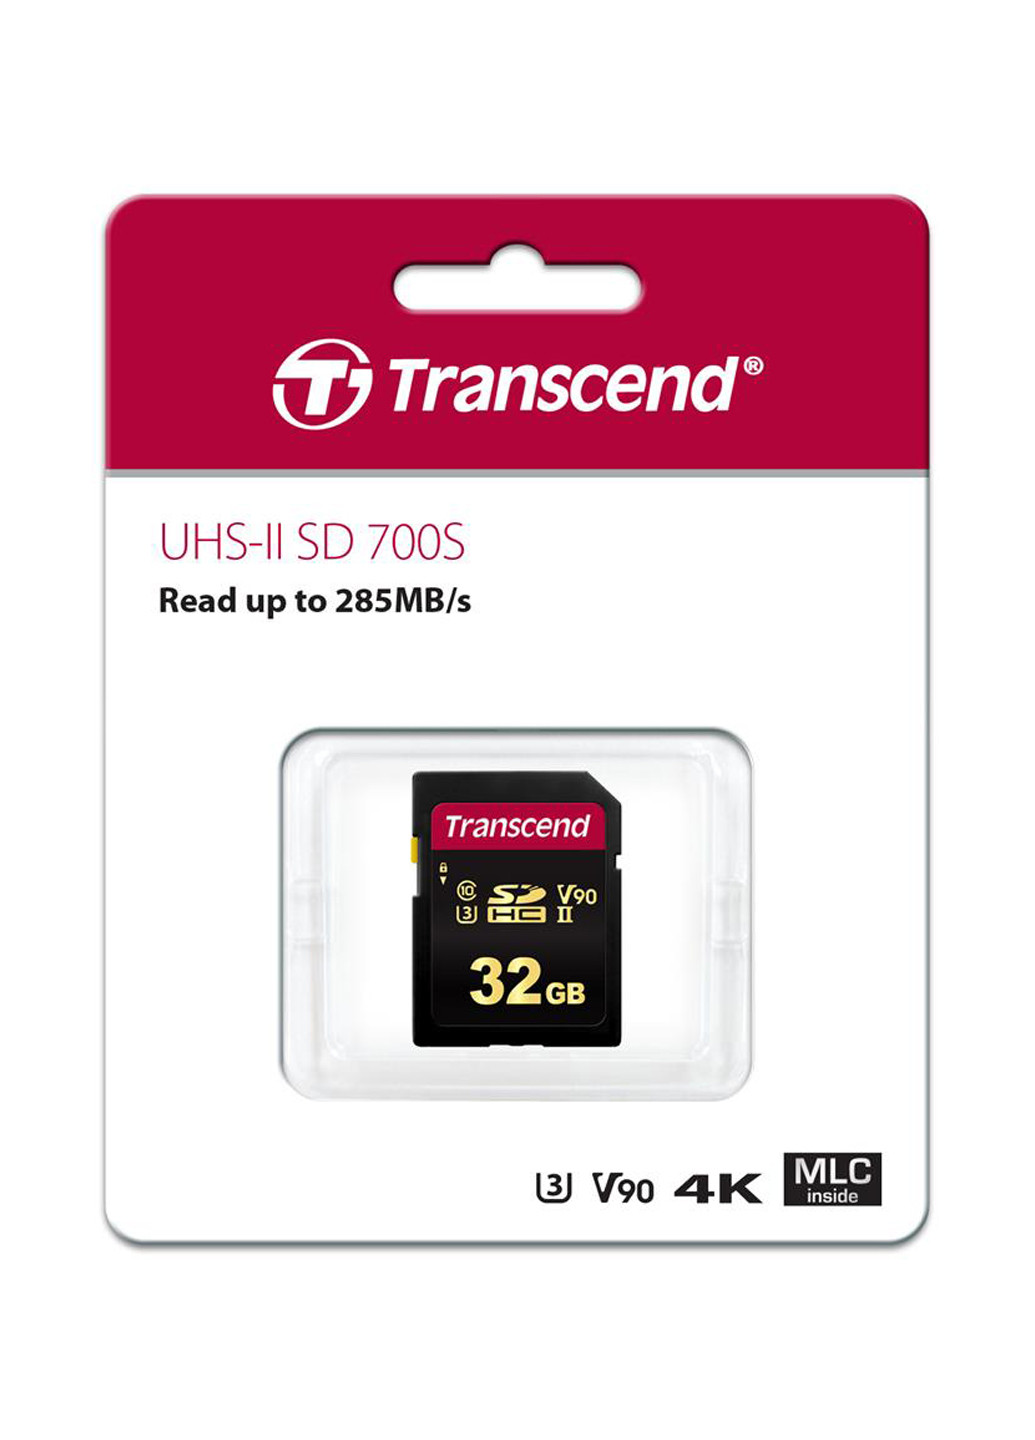 Карта памяти SDHC 32GB C10 UHS-II U3 (R285/W180MB/s) 4K (TS32GSDC700S) Transcend карта памяти transcend sdhc 32gb c10 uhs-ii u3 (r285/w180mb/s) 4k (ts32gsdc700s) (130842771)